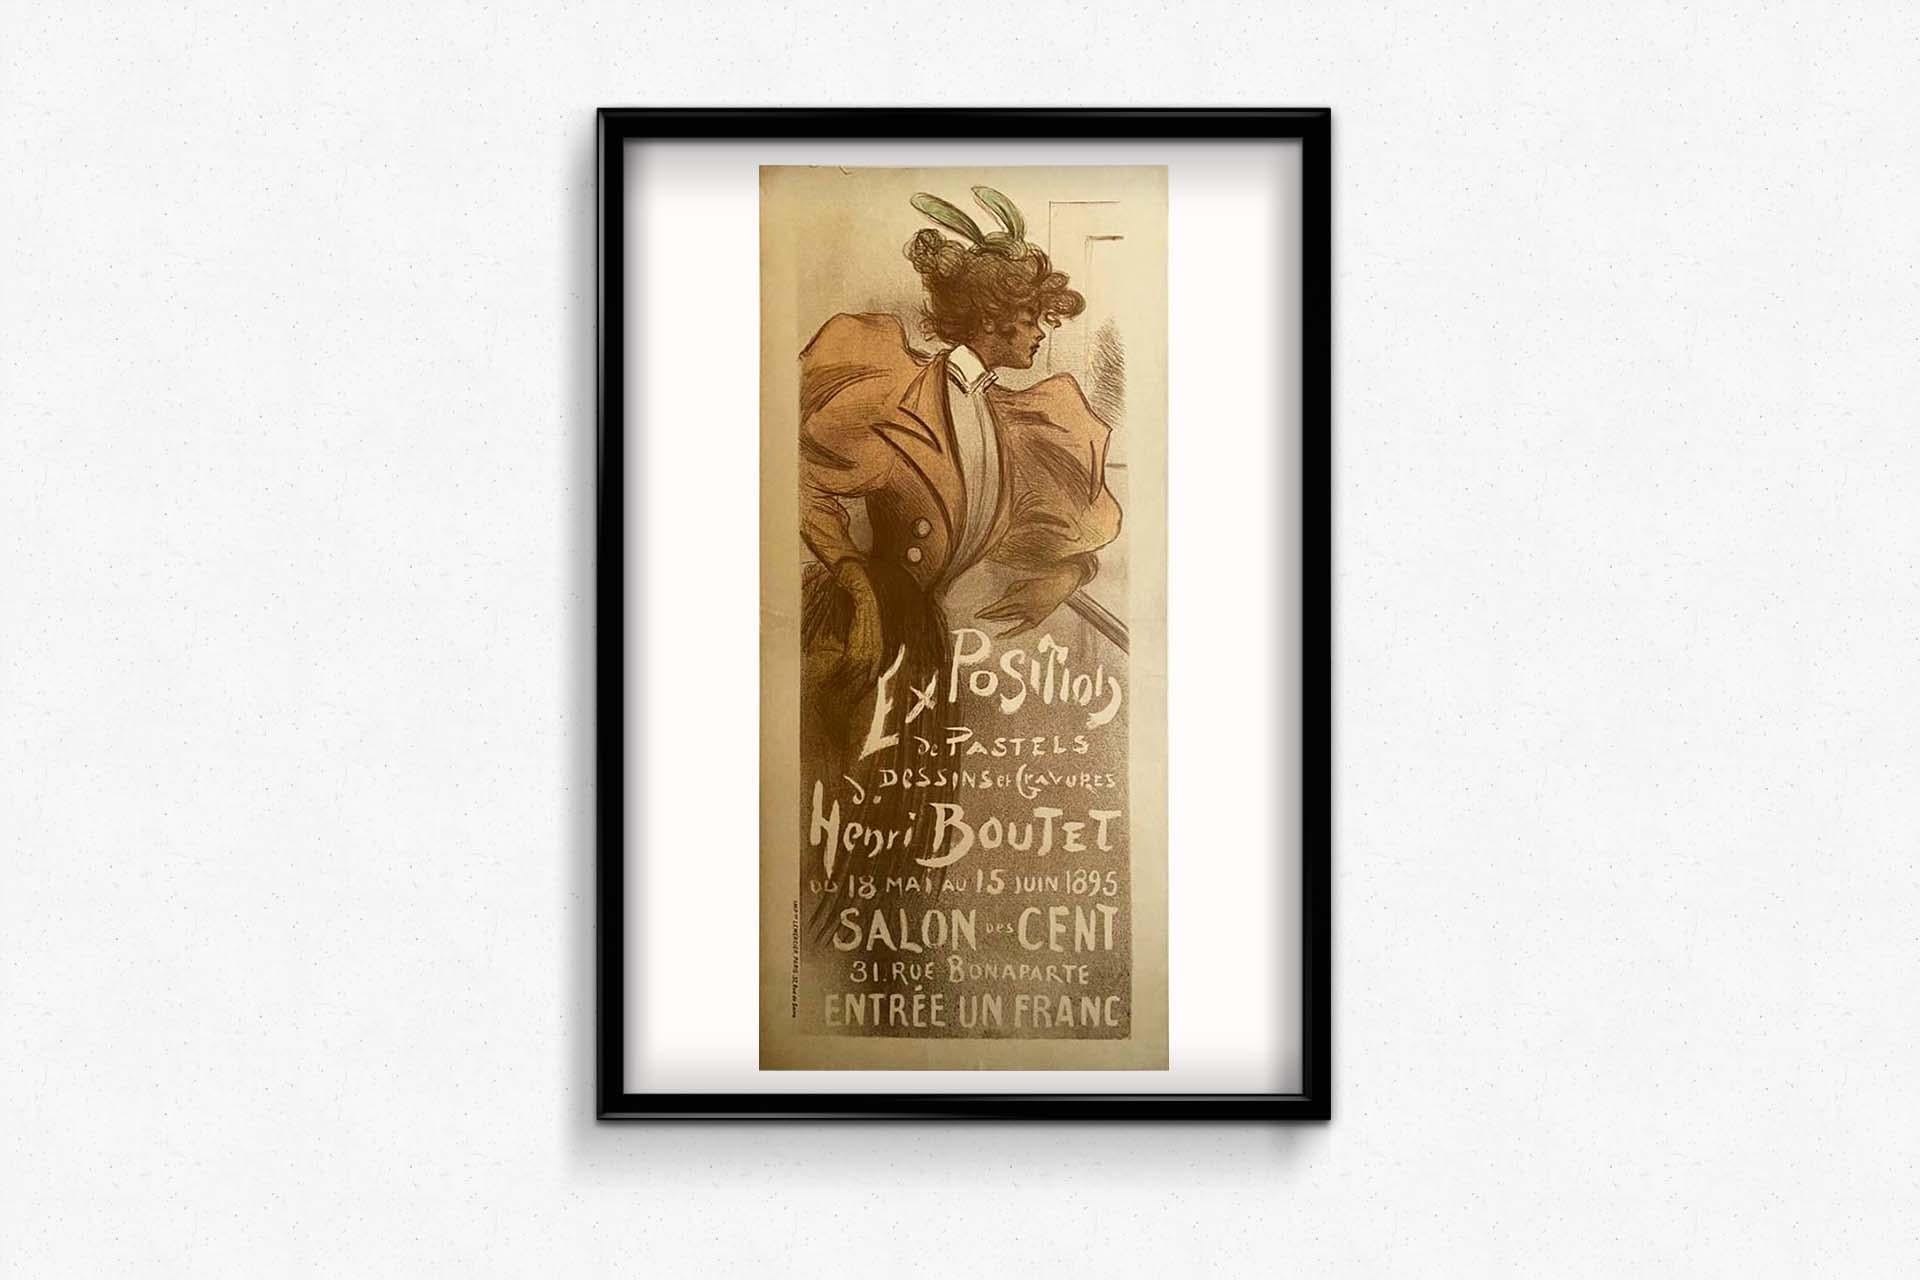 Original 1895 Art Nouveau poster for Henri Boutet's exhibition Salon des cent For Sale 2